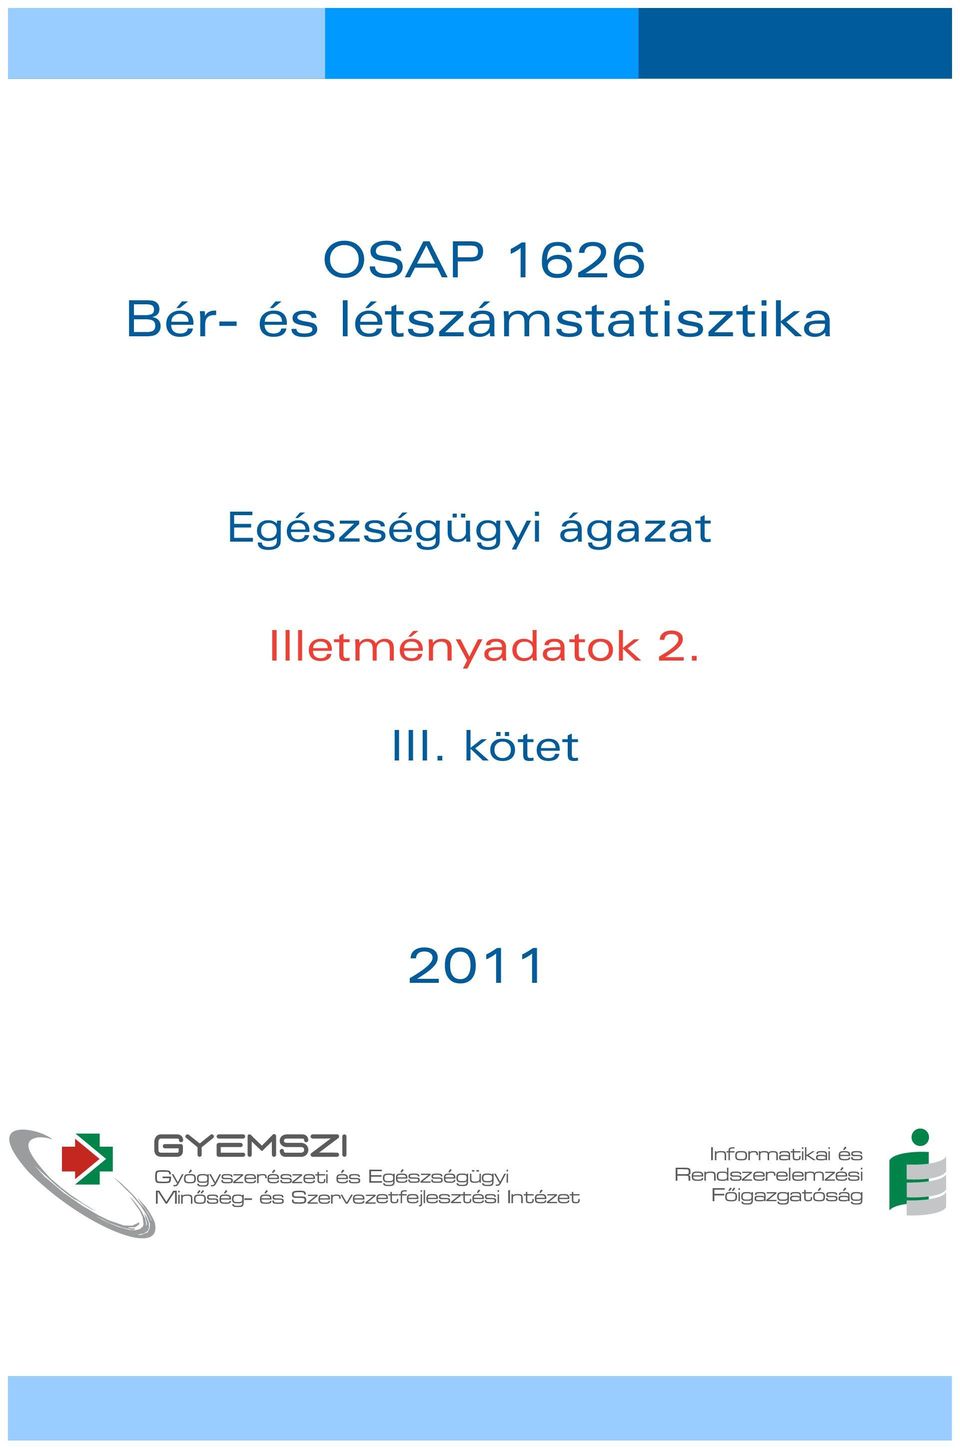 kötet 2011 GYEMSZI Gyógyszerészeti és Egészségügyi